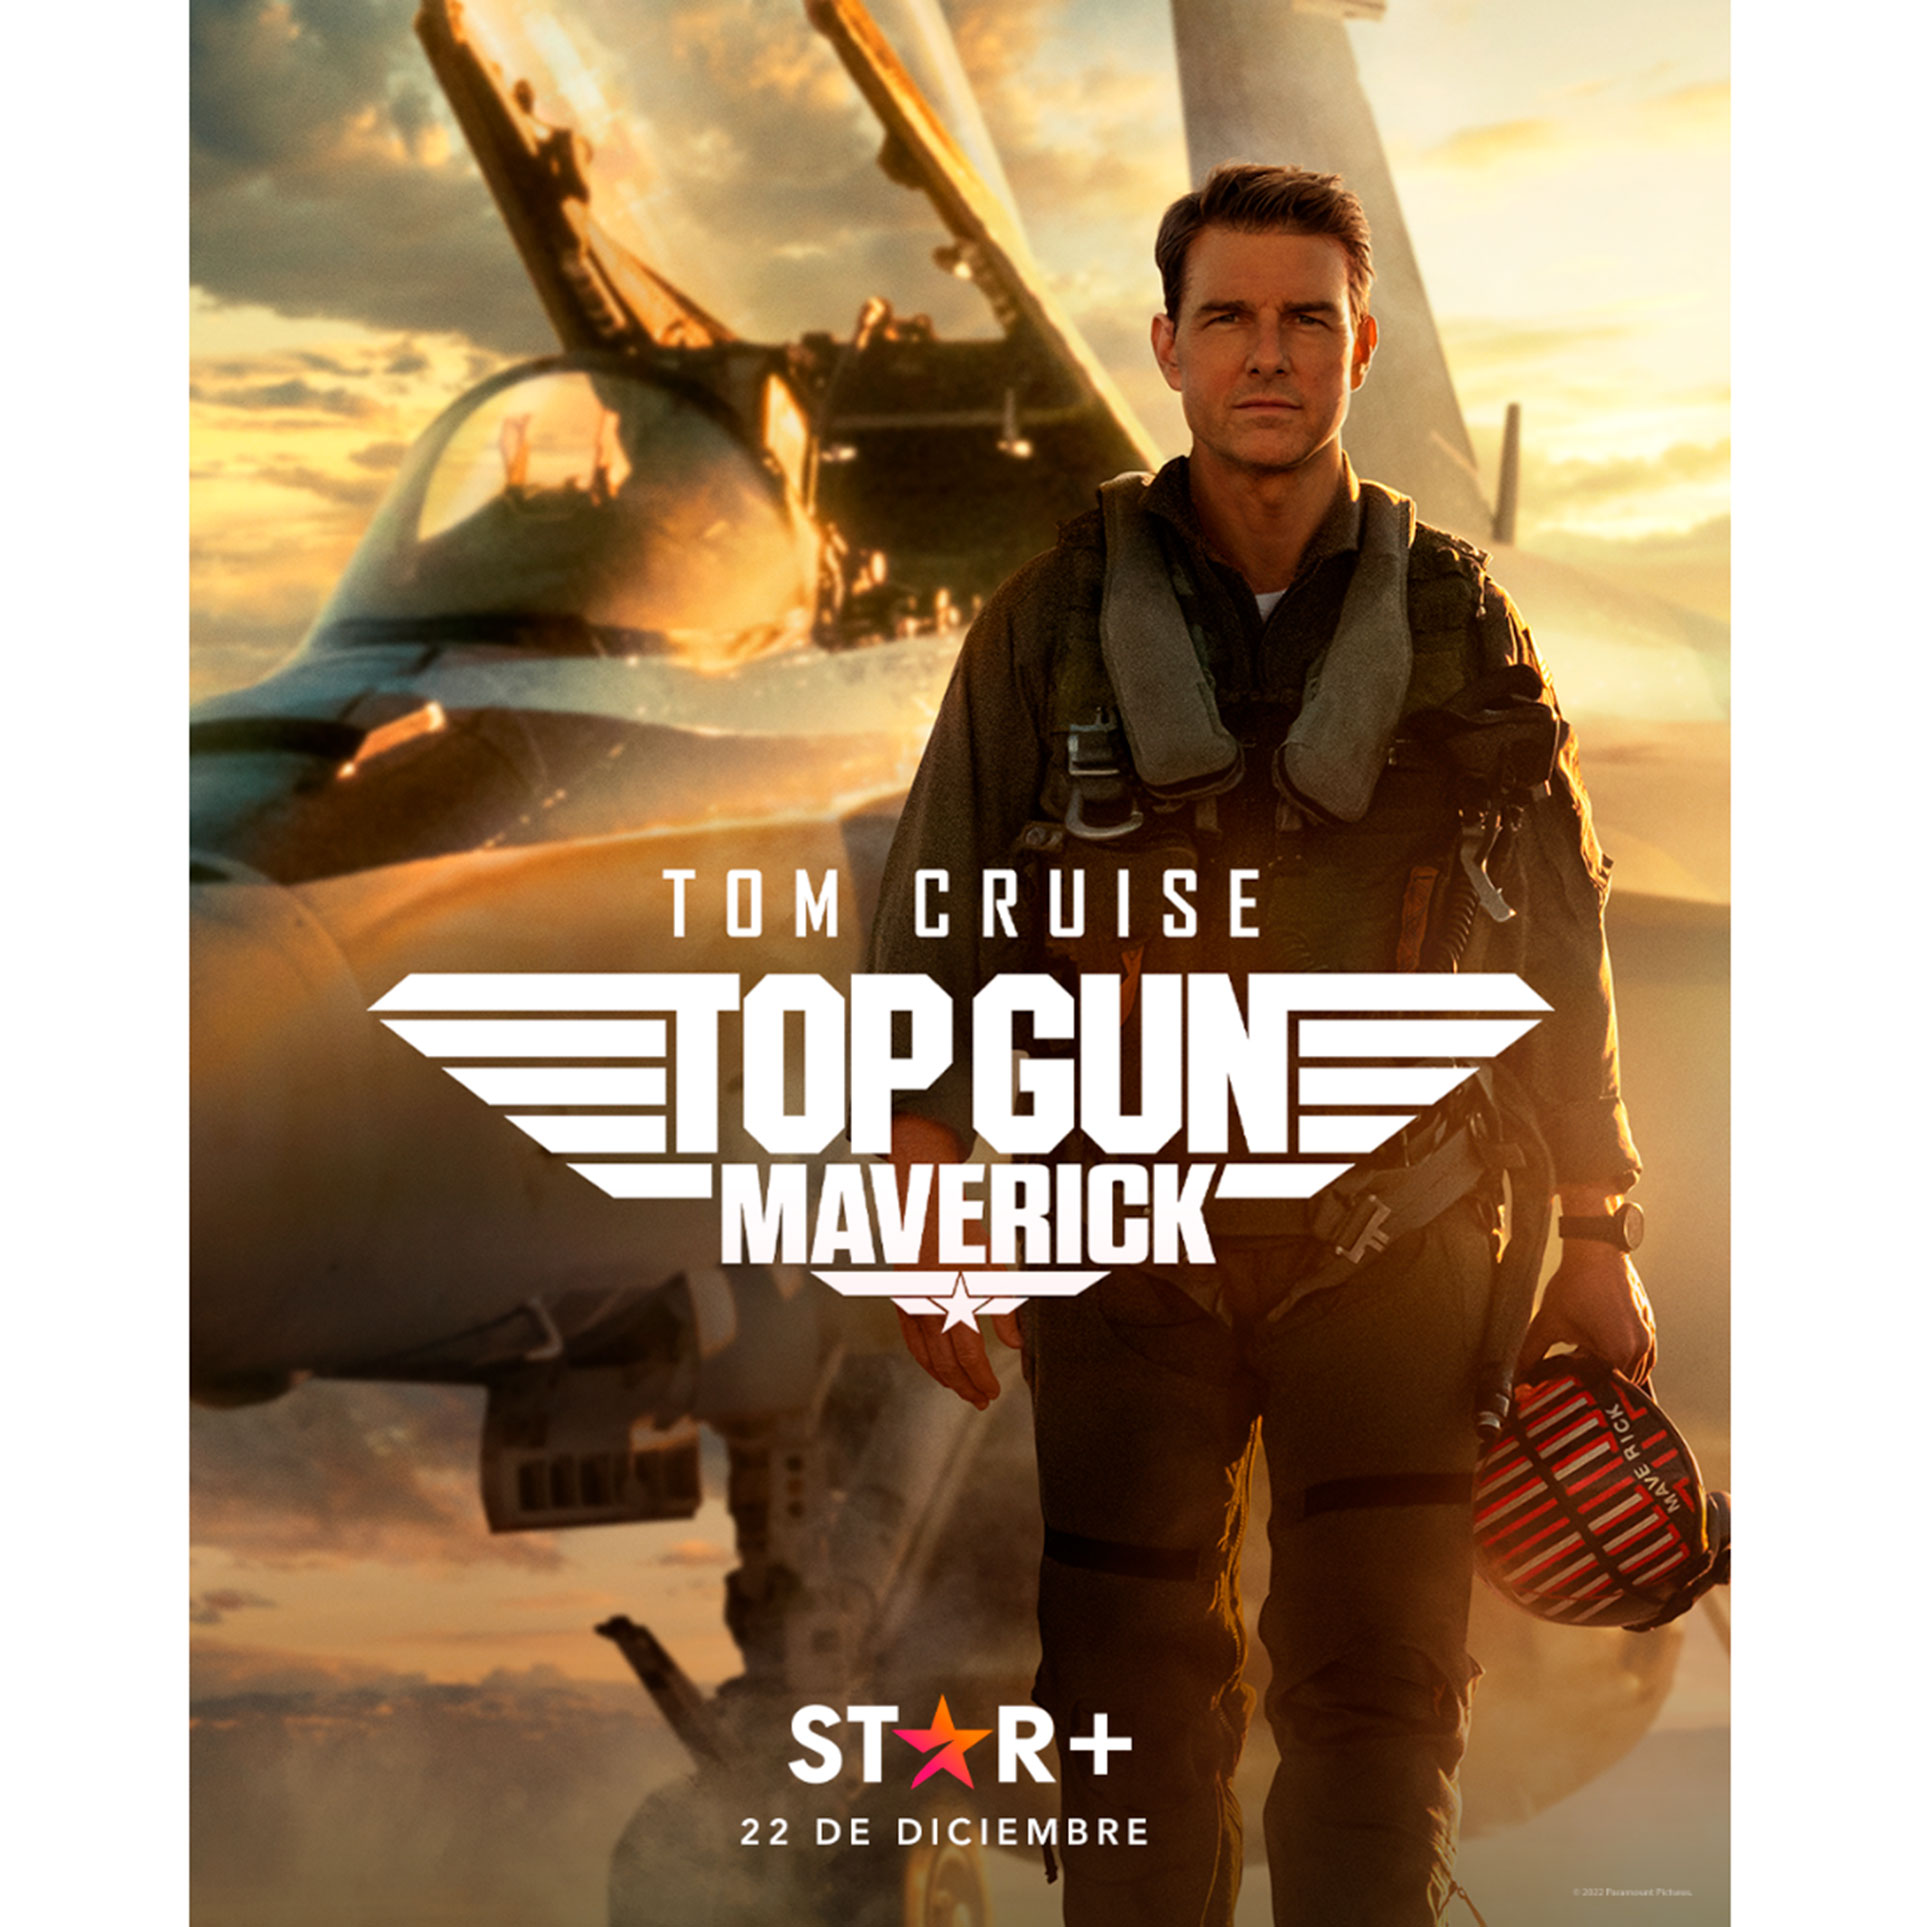 Top Gun: Maverick fue una de las películas más vistas del 2022. (Star+)